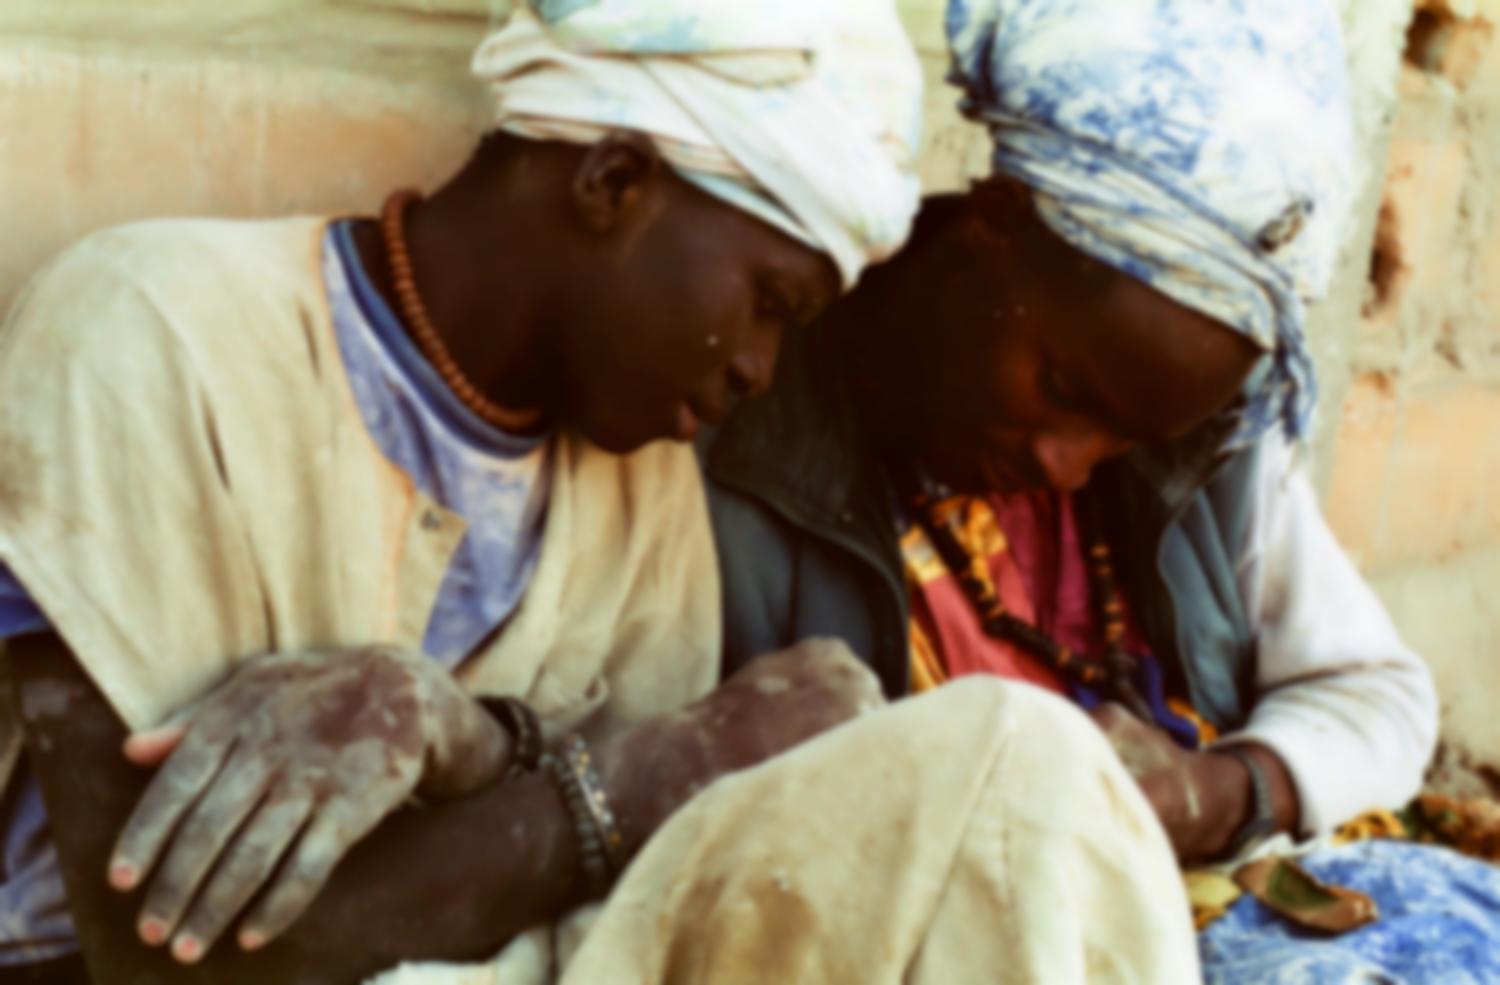 Assis contre un mur, deux Baye semblent se faire des confidences intimes. Touba, Sénégal, février 2008.